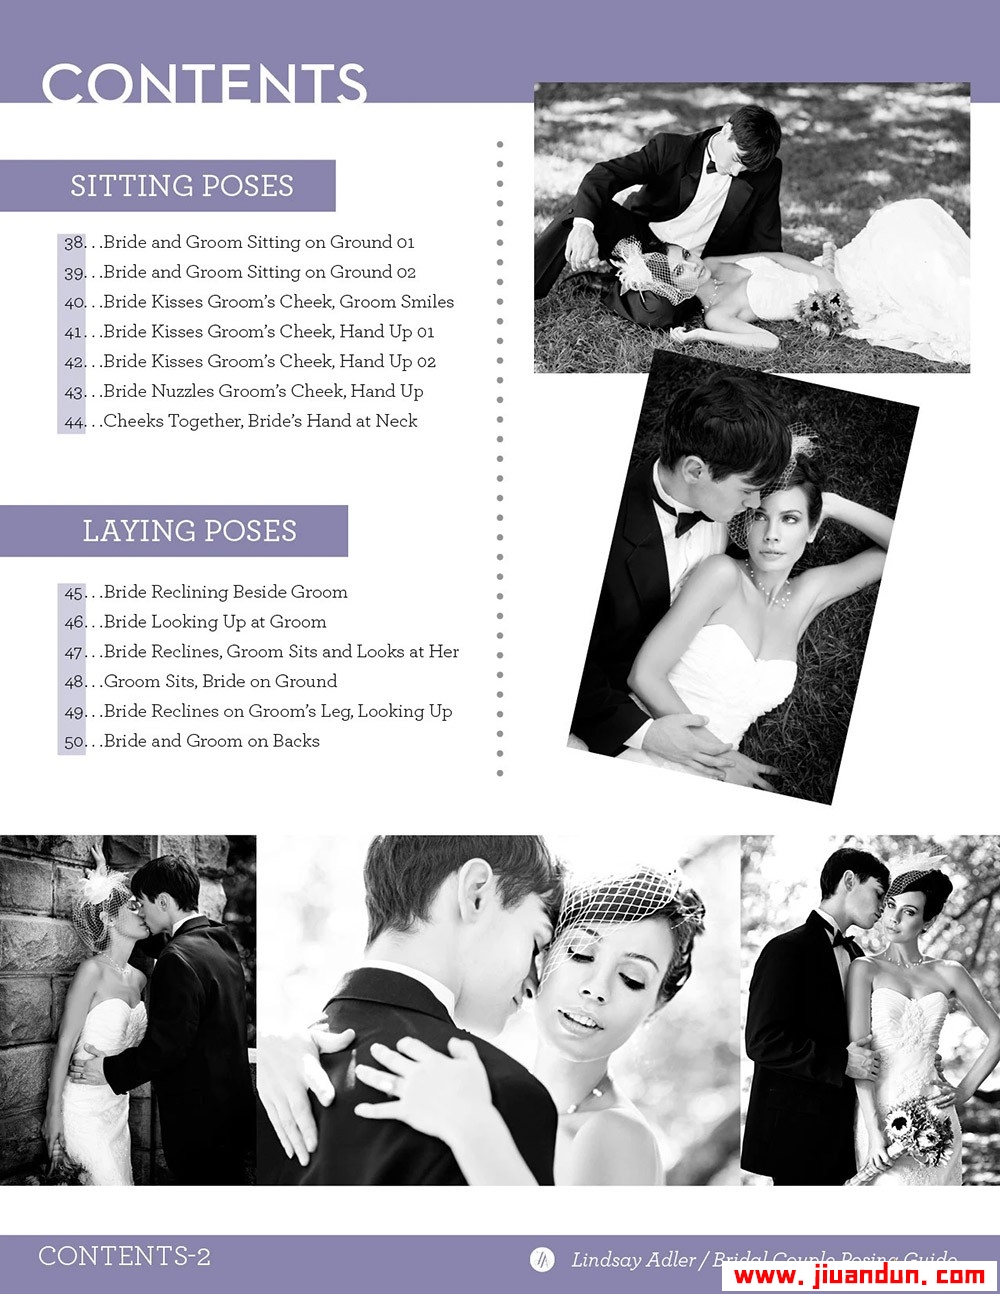 时尚摄影师Lindsay Adler新婚夫妇合影摆姿势指南PDF英文版教程 摄影 第2张